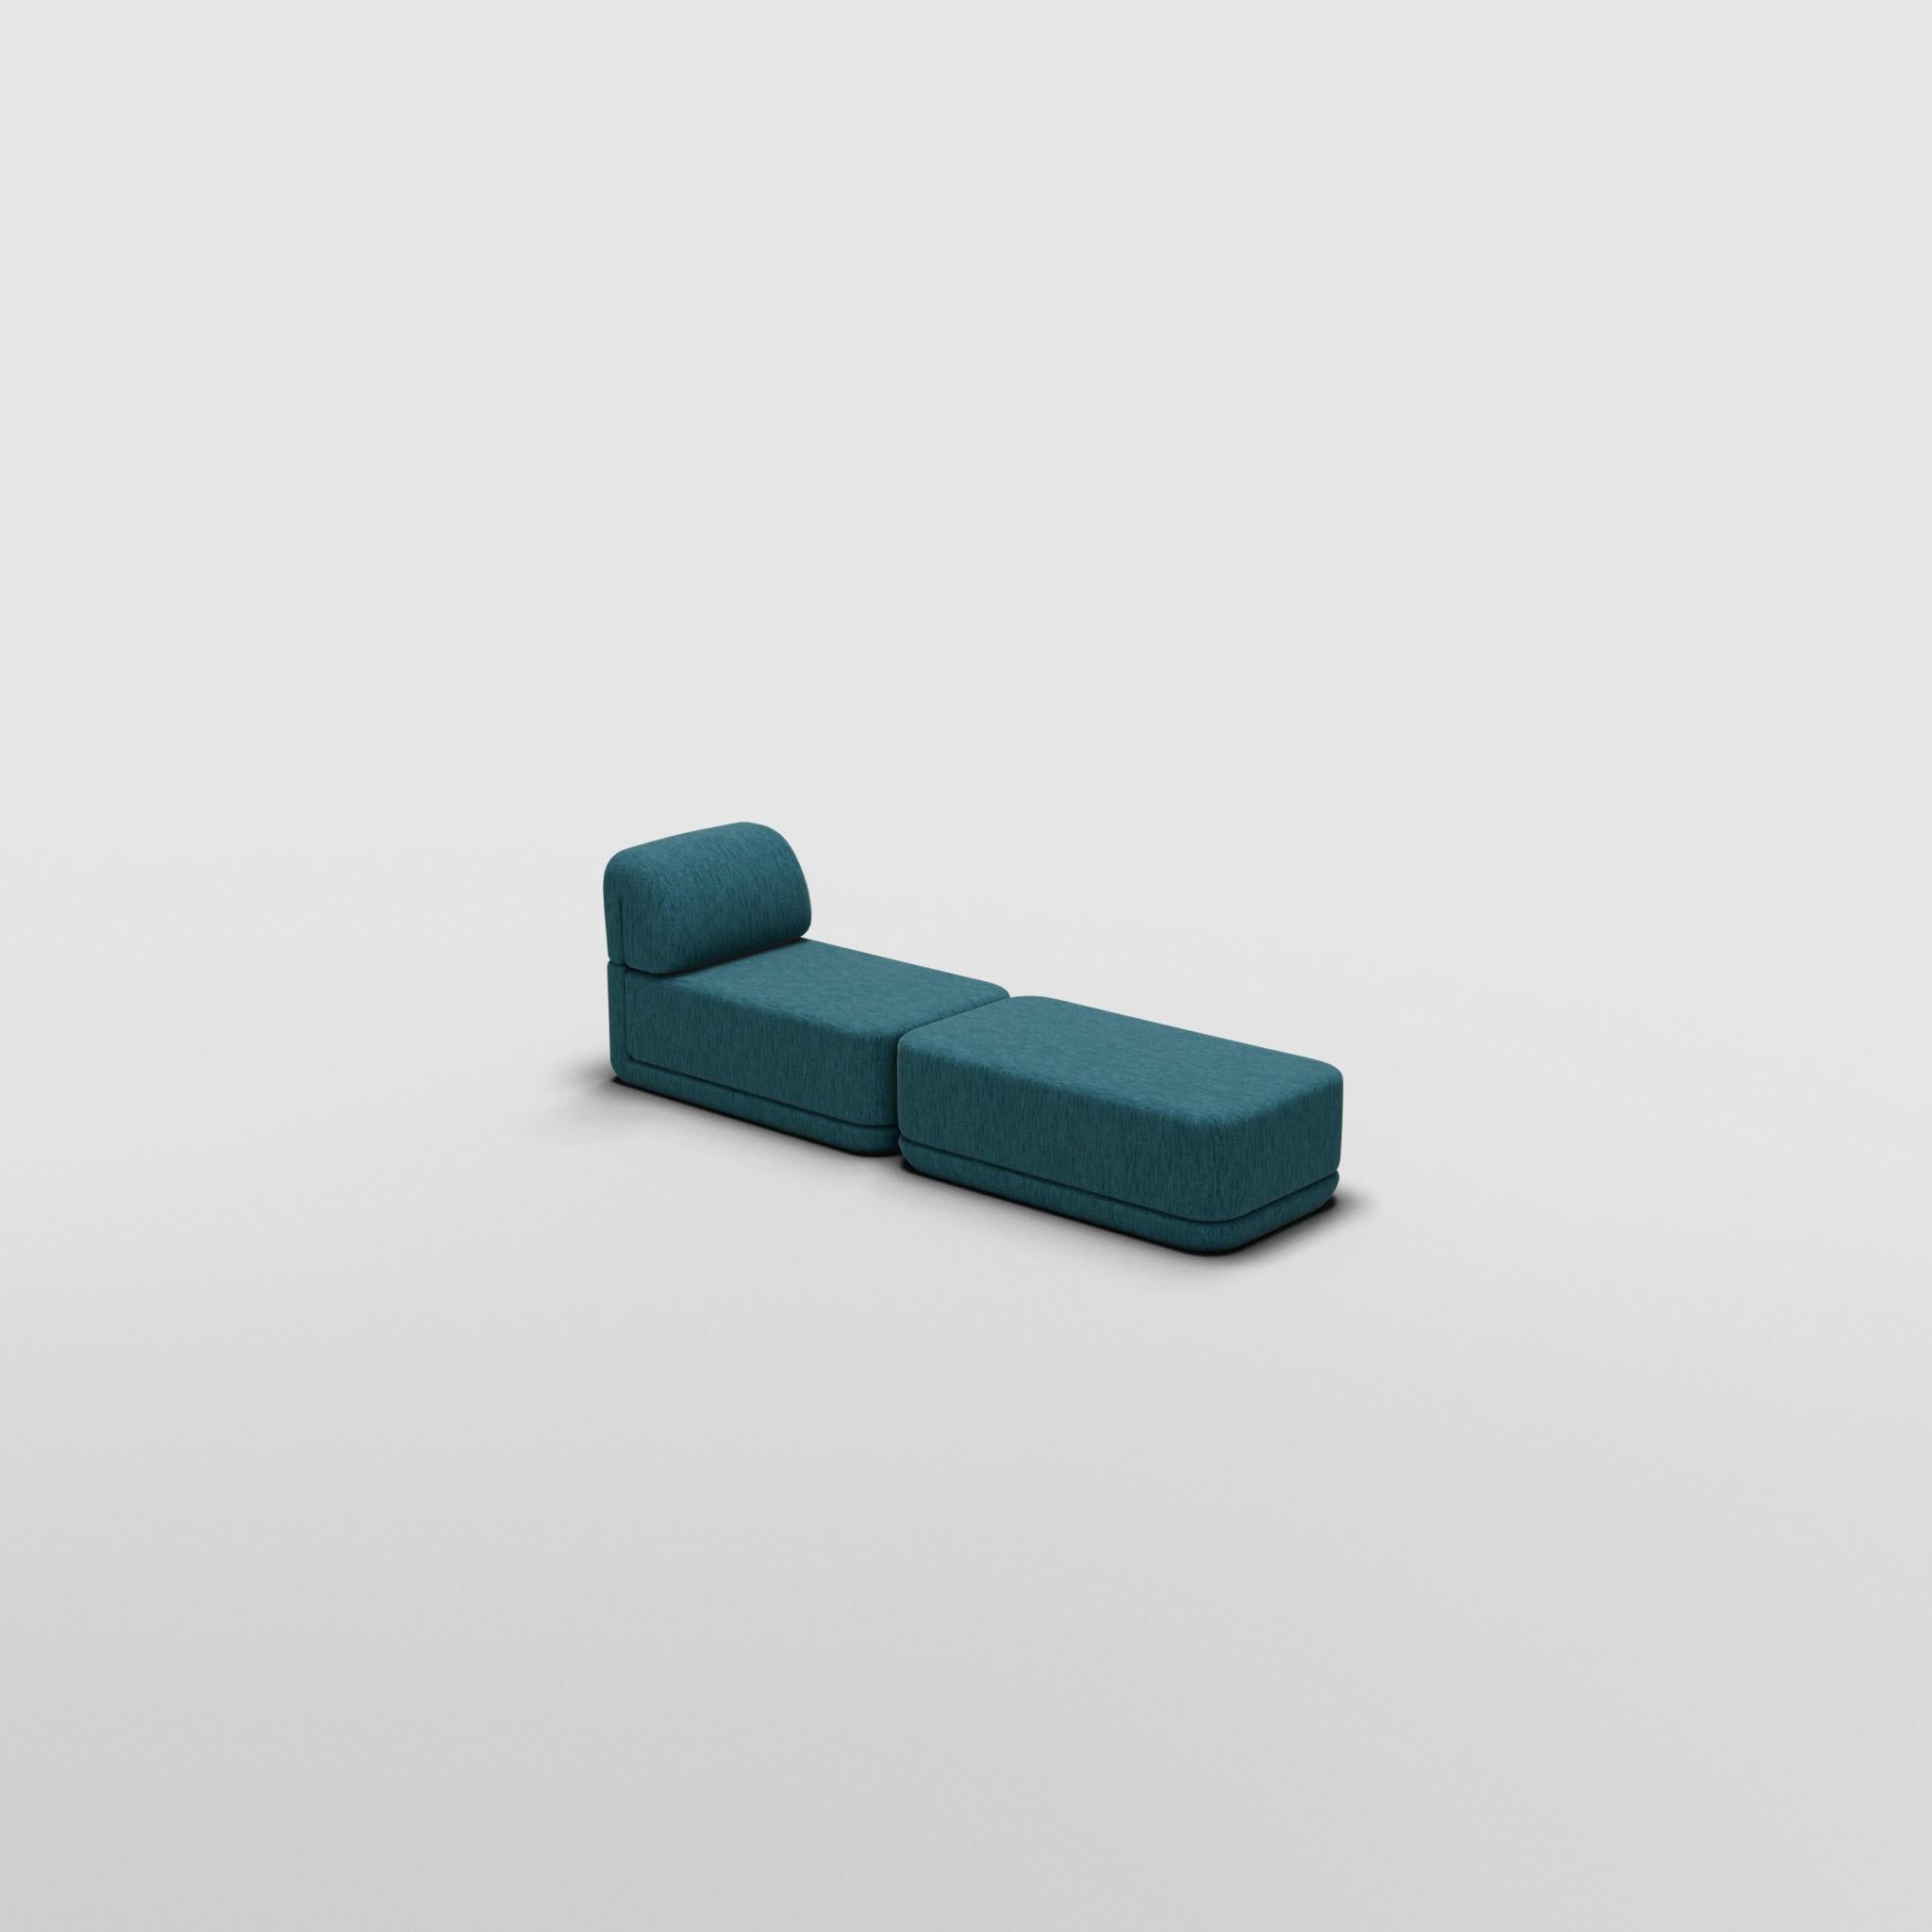 Slim Lounge Ottoman Set - Inspiré par les meubles de luxe italiens des années 70

Découvrez le canapé Cube, où l'art rencontre l'adaptabilité. Son design sculptural et son confort personnalisable créent des possibilités infinies pour votre espace de